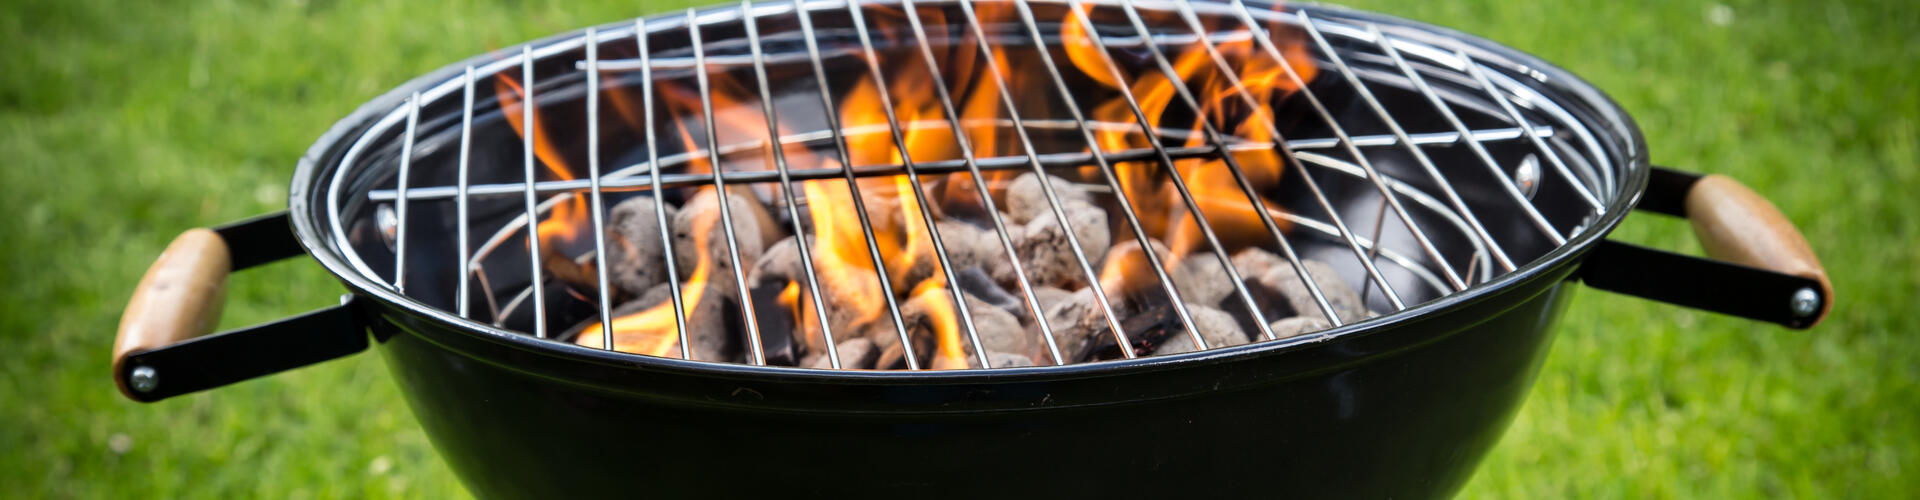 Nettoyer la grille de son barbecue avec Maison et Services